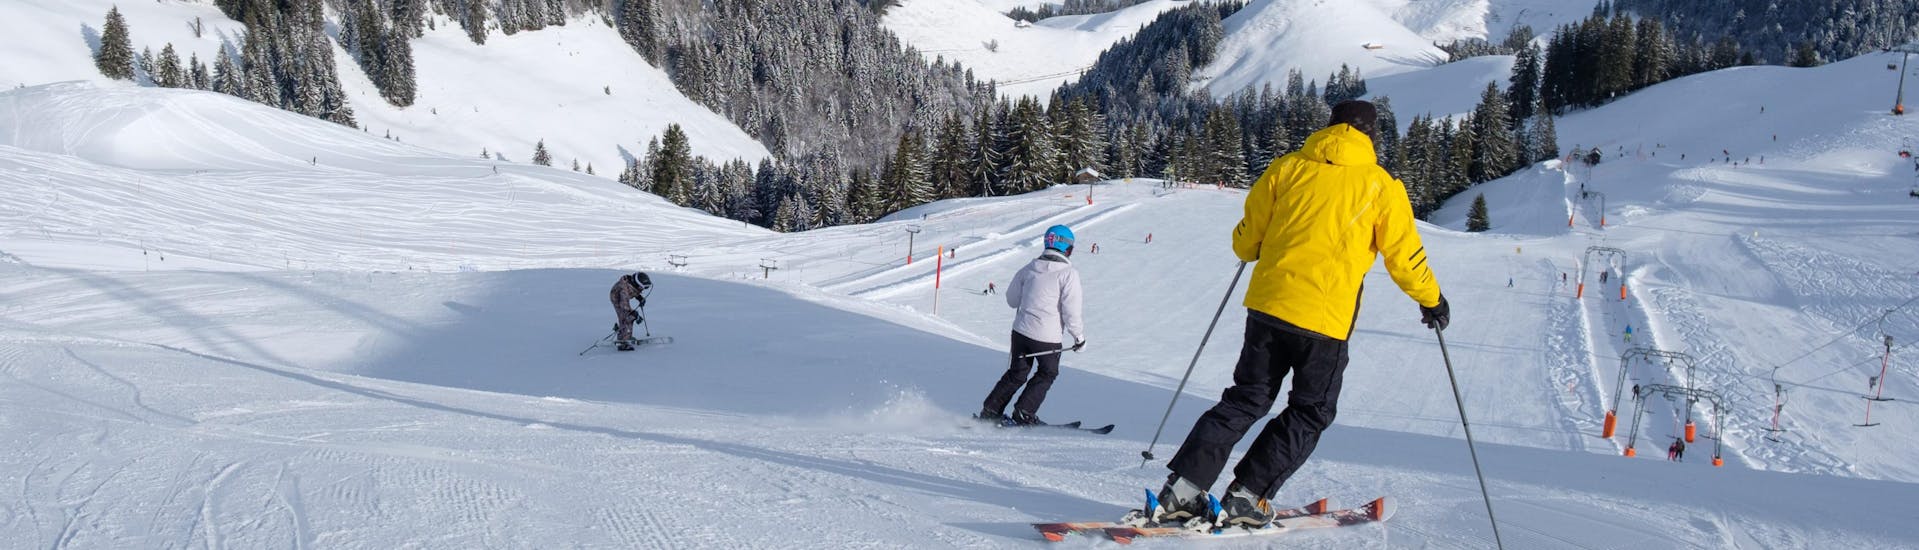 Plusieurs skieurs dévalent l'une des pistes fraîchement préparées de la station de ski suisse de Charmey, un endroit populaire pour les skieurs en herbe qui veulent réserver des cours de ski avec une des écoles de ski locales.